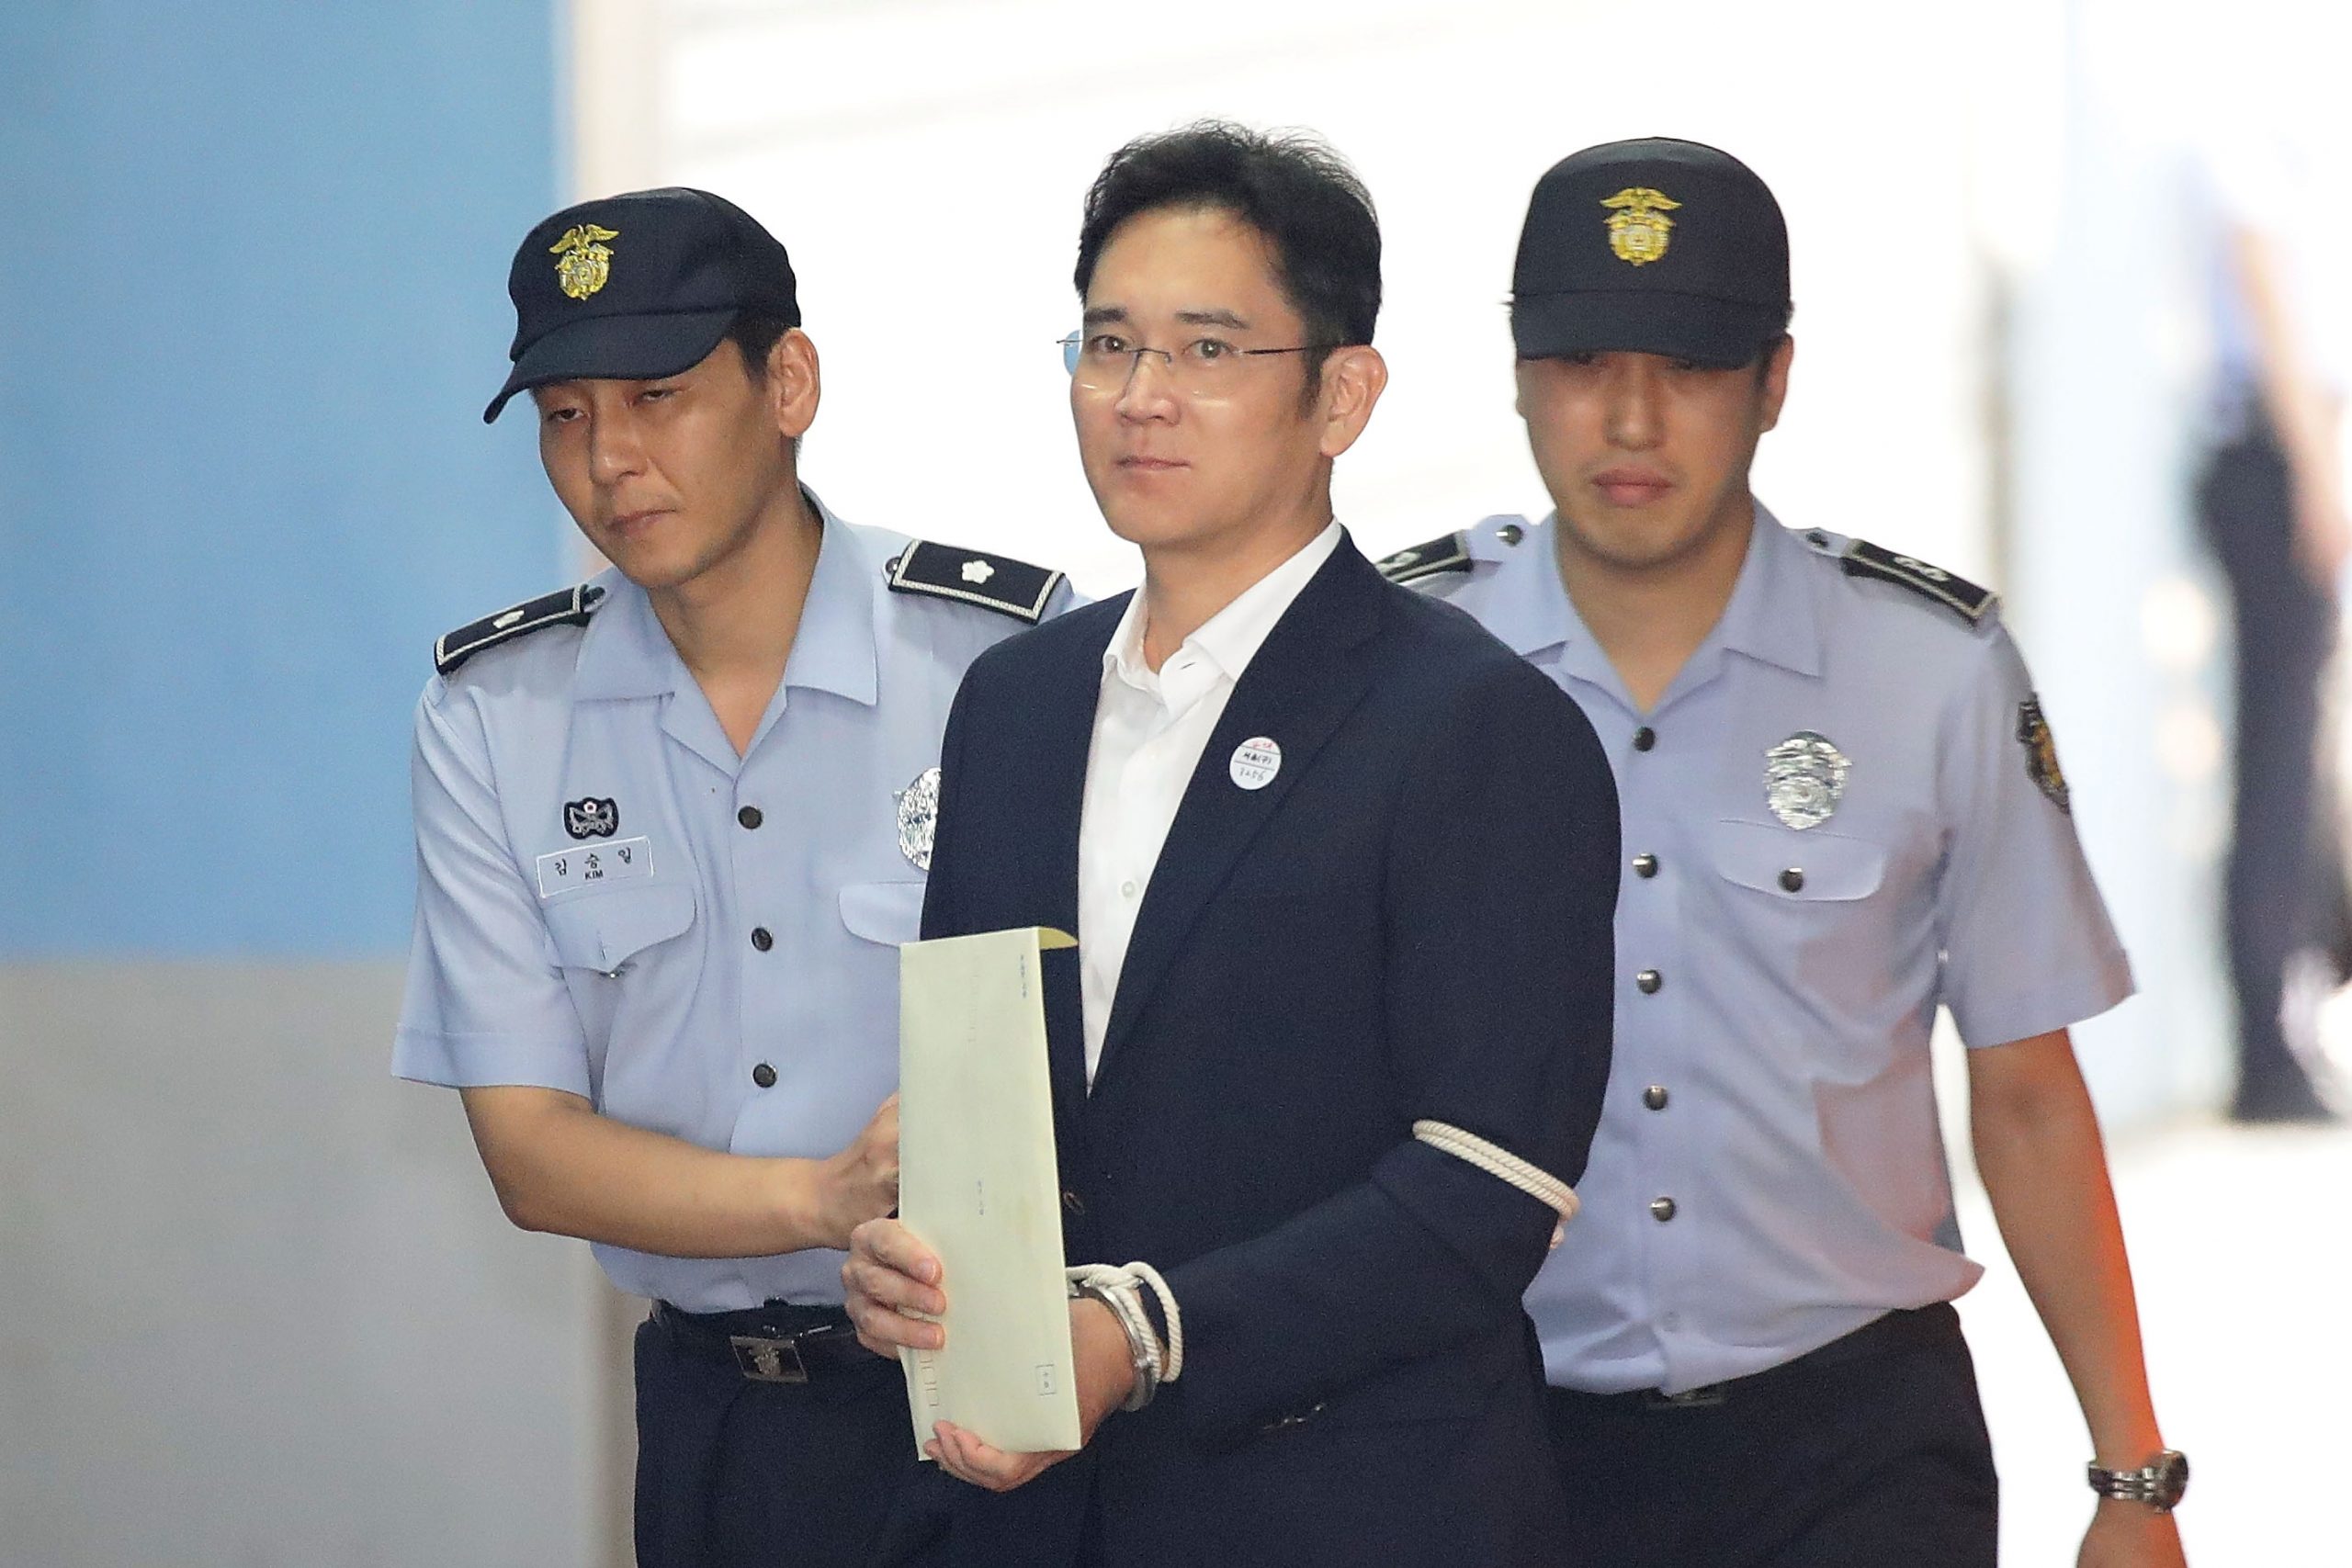 Murió Lee Kun-Hee, el hombre más rico de Corea del Sur y presidente de Samsung